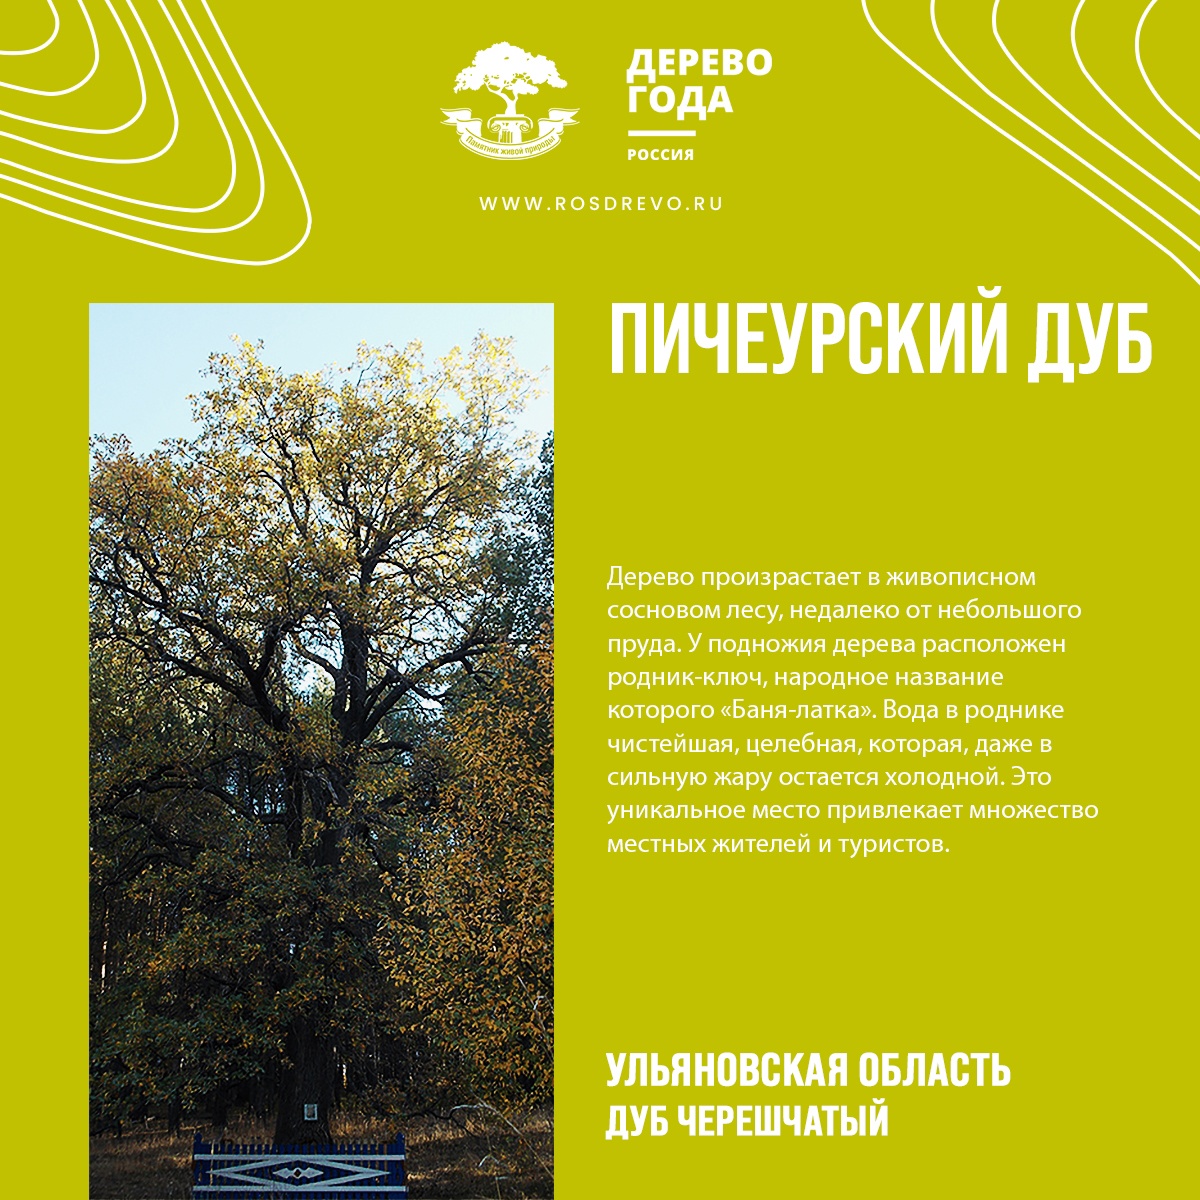 Дуб из Ульяновской области претендует на звание дерева года